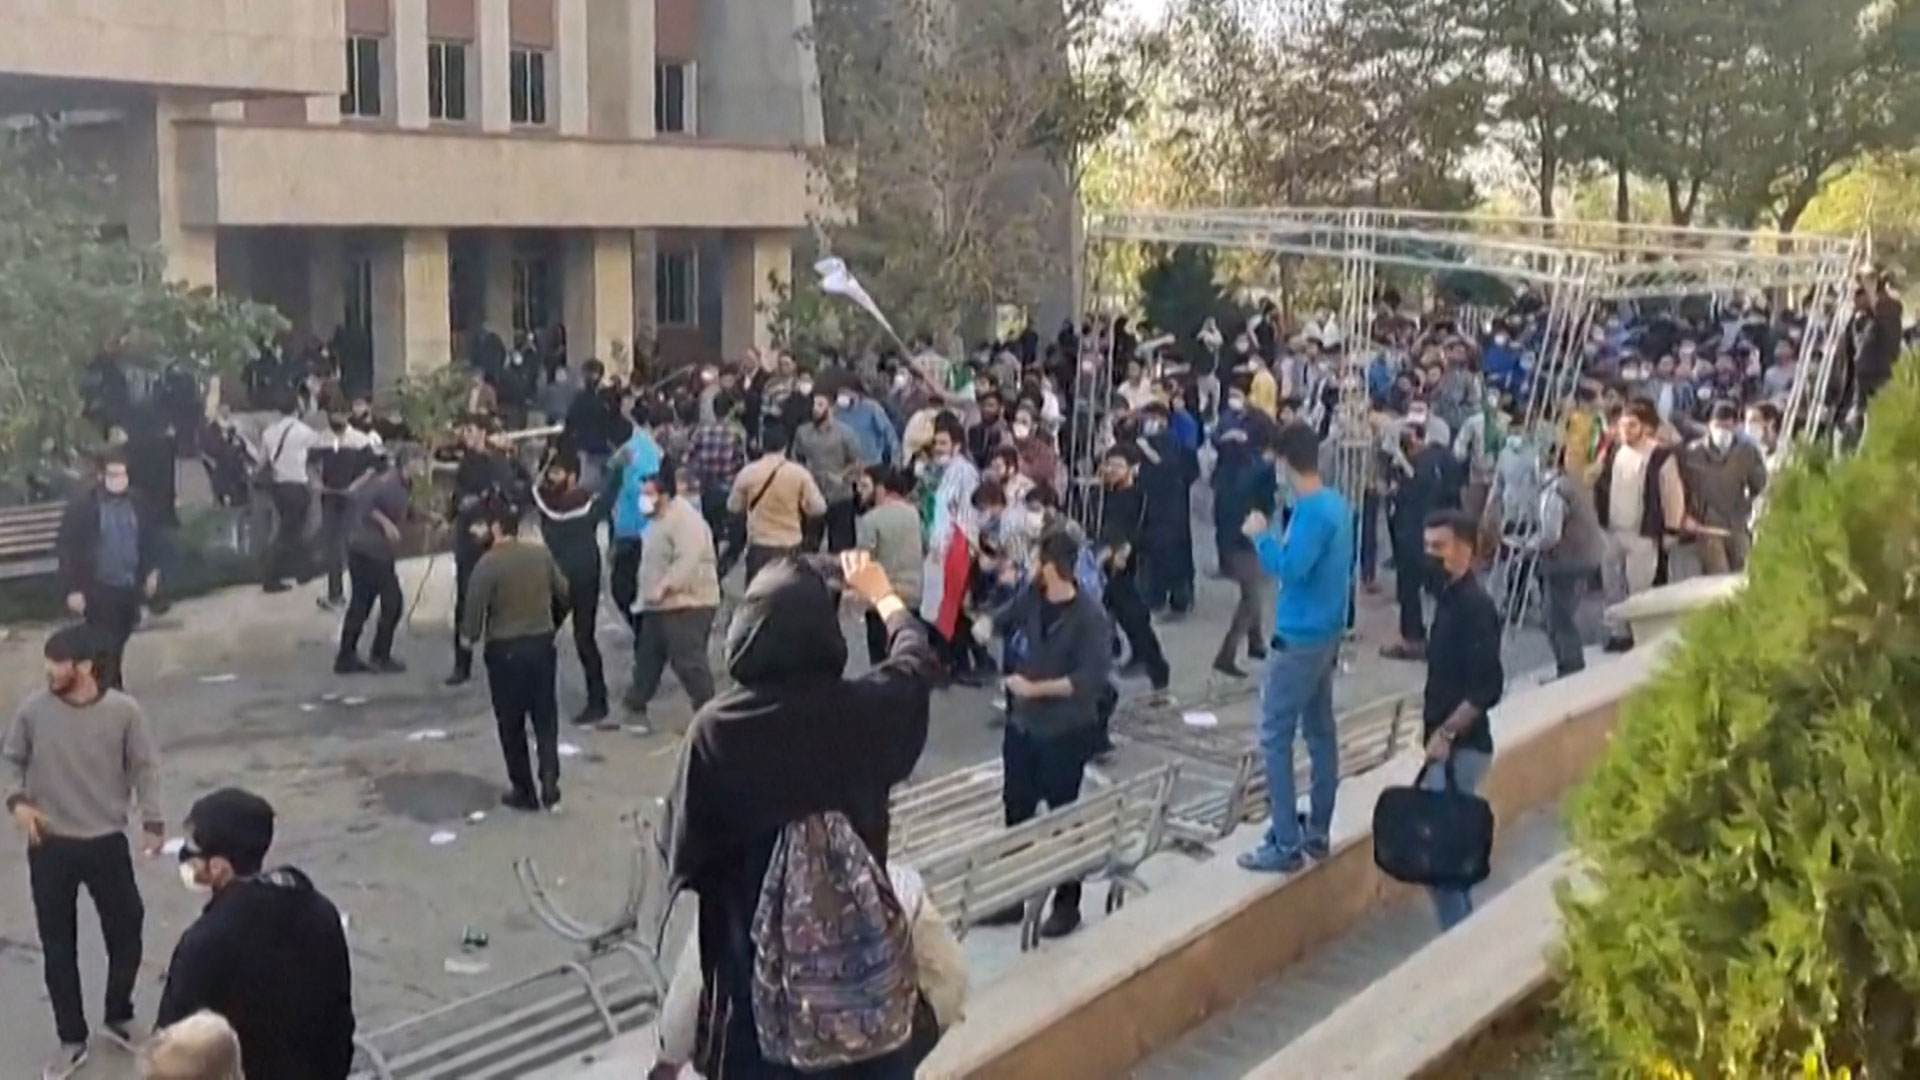 Protesta en la universidad tecnológica de Teherán. En varias universidades, los estudiantes desafían la segregación por sexos en las cafeterias. (Telegram)